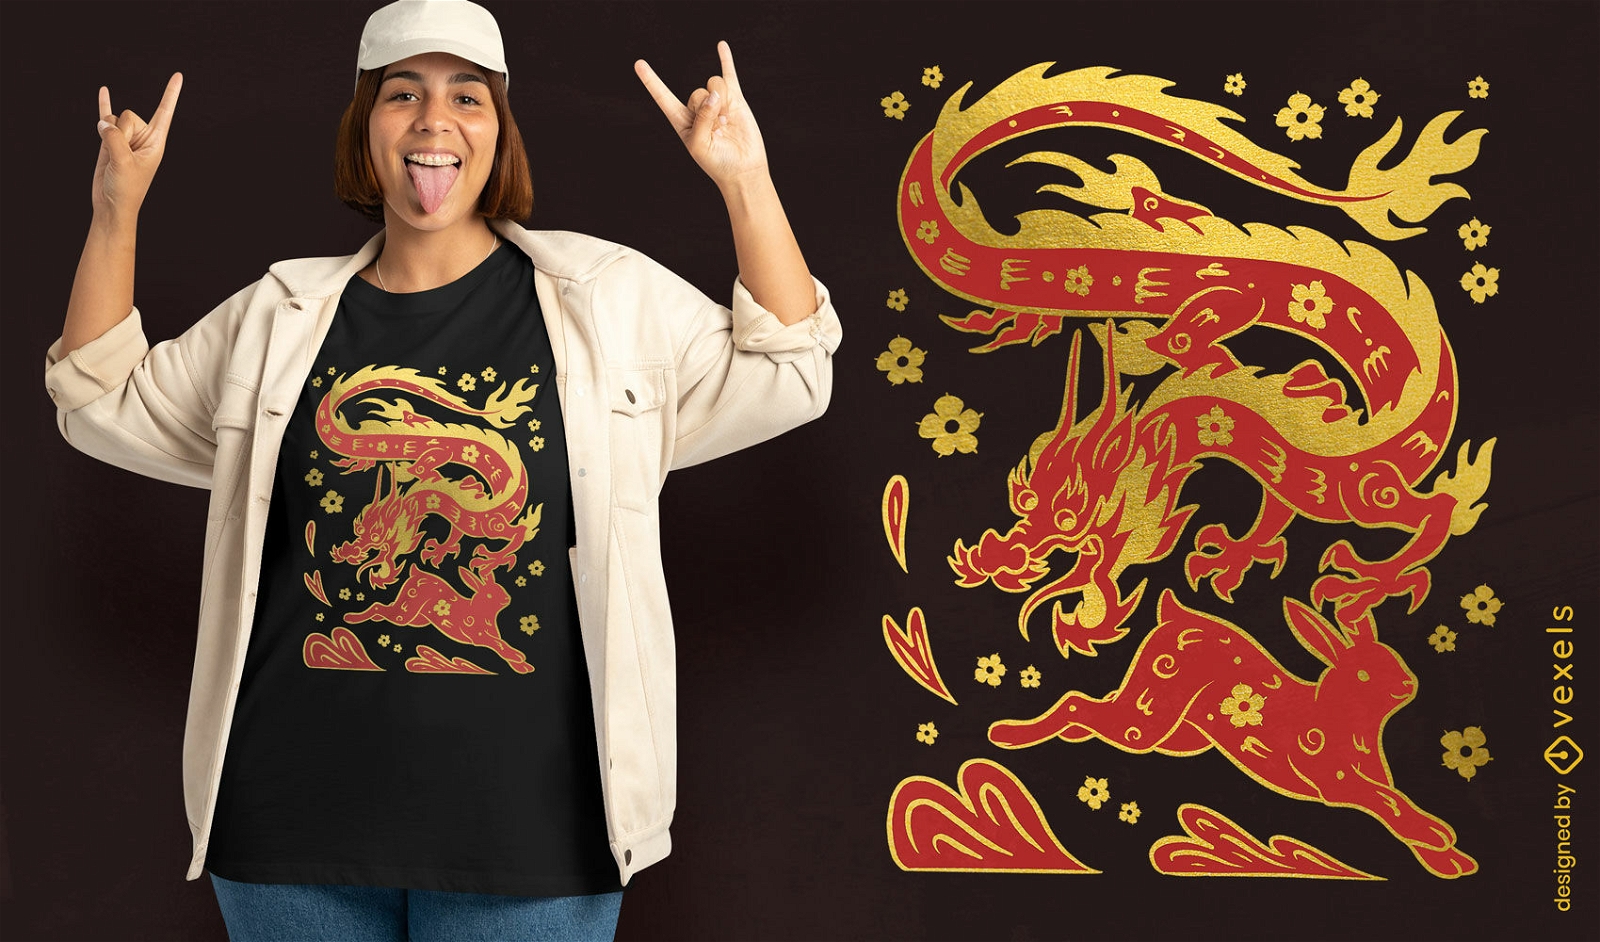 Duotone T-Shirt-Design zum Chinesischen Neujahrsfest